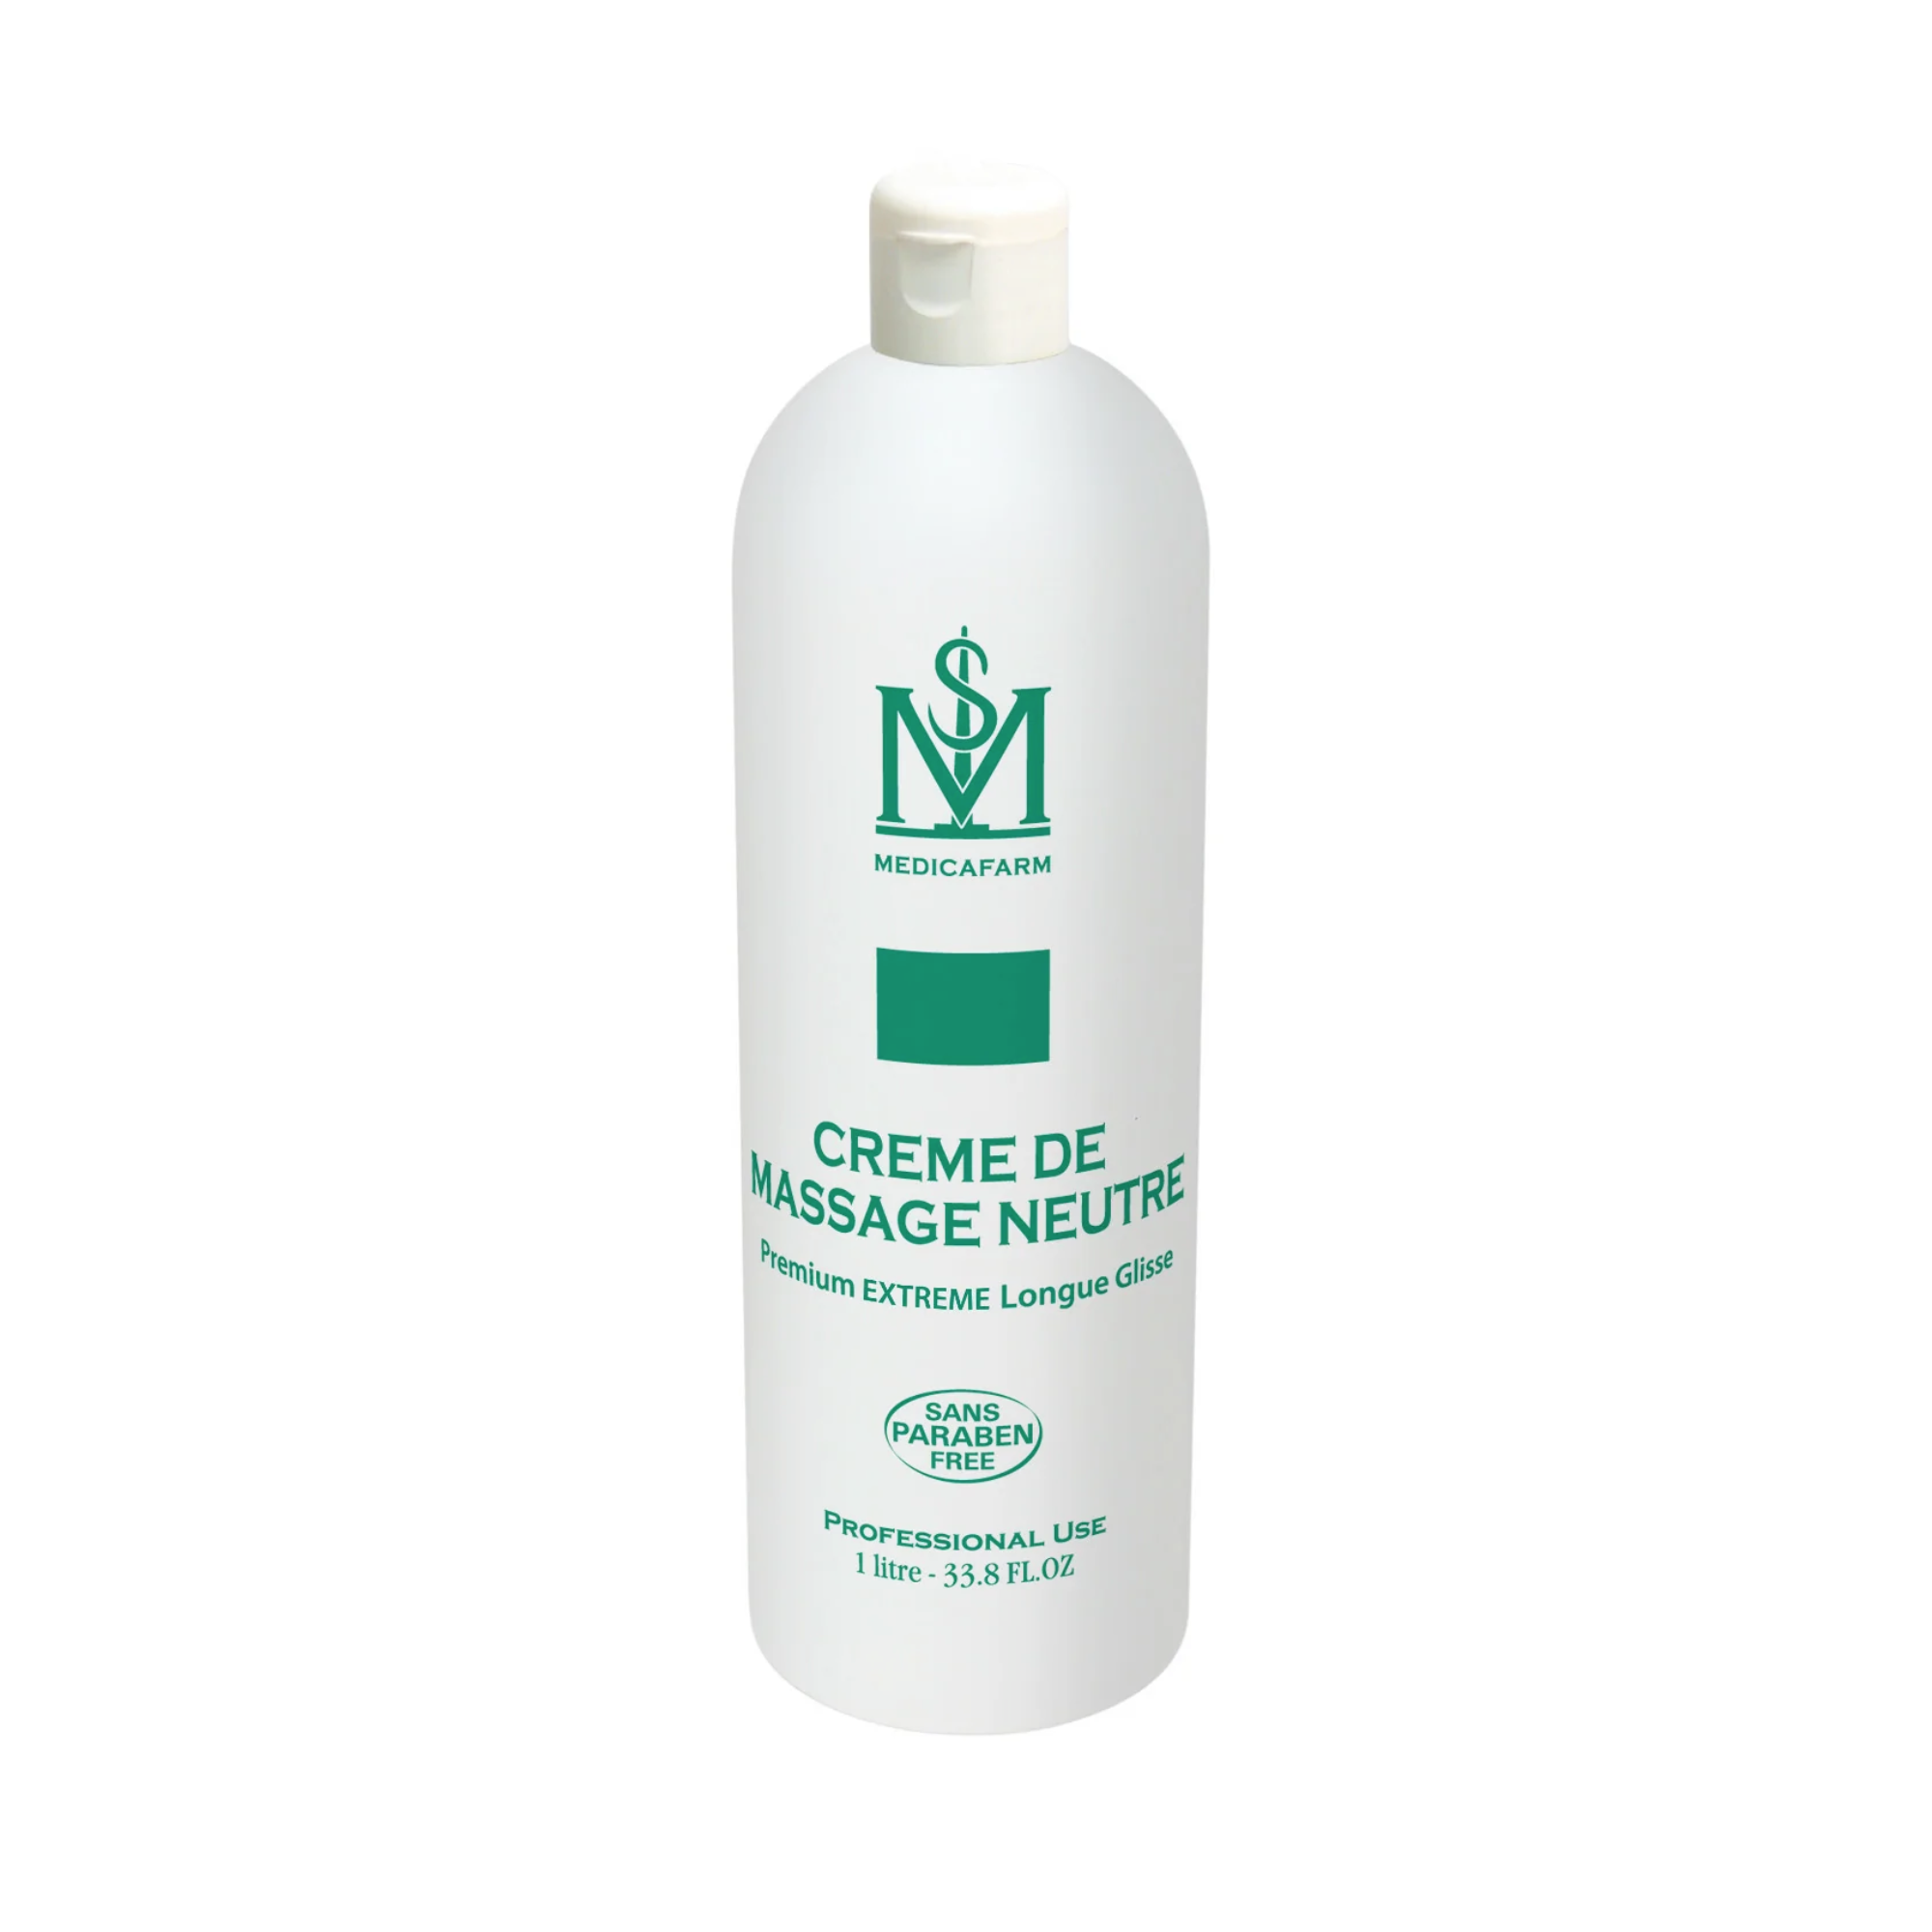 Crème de massage neutre premium extreme longue glisse - 250 ml ou 1 L - Medicafarm